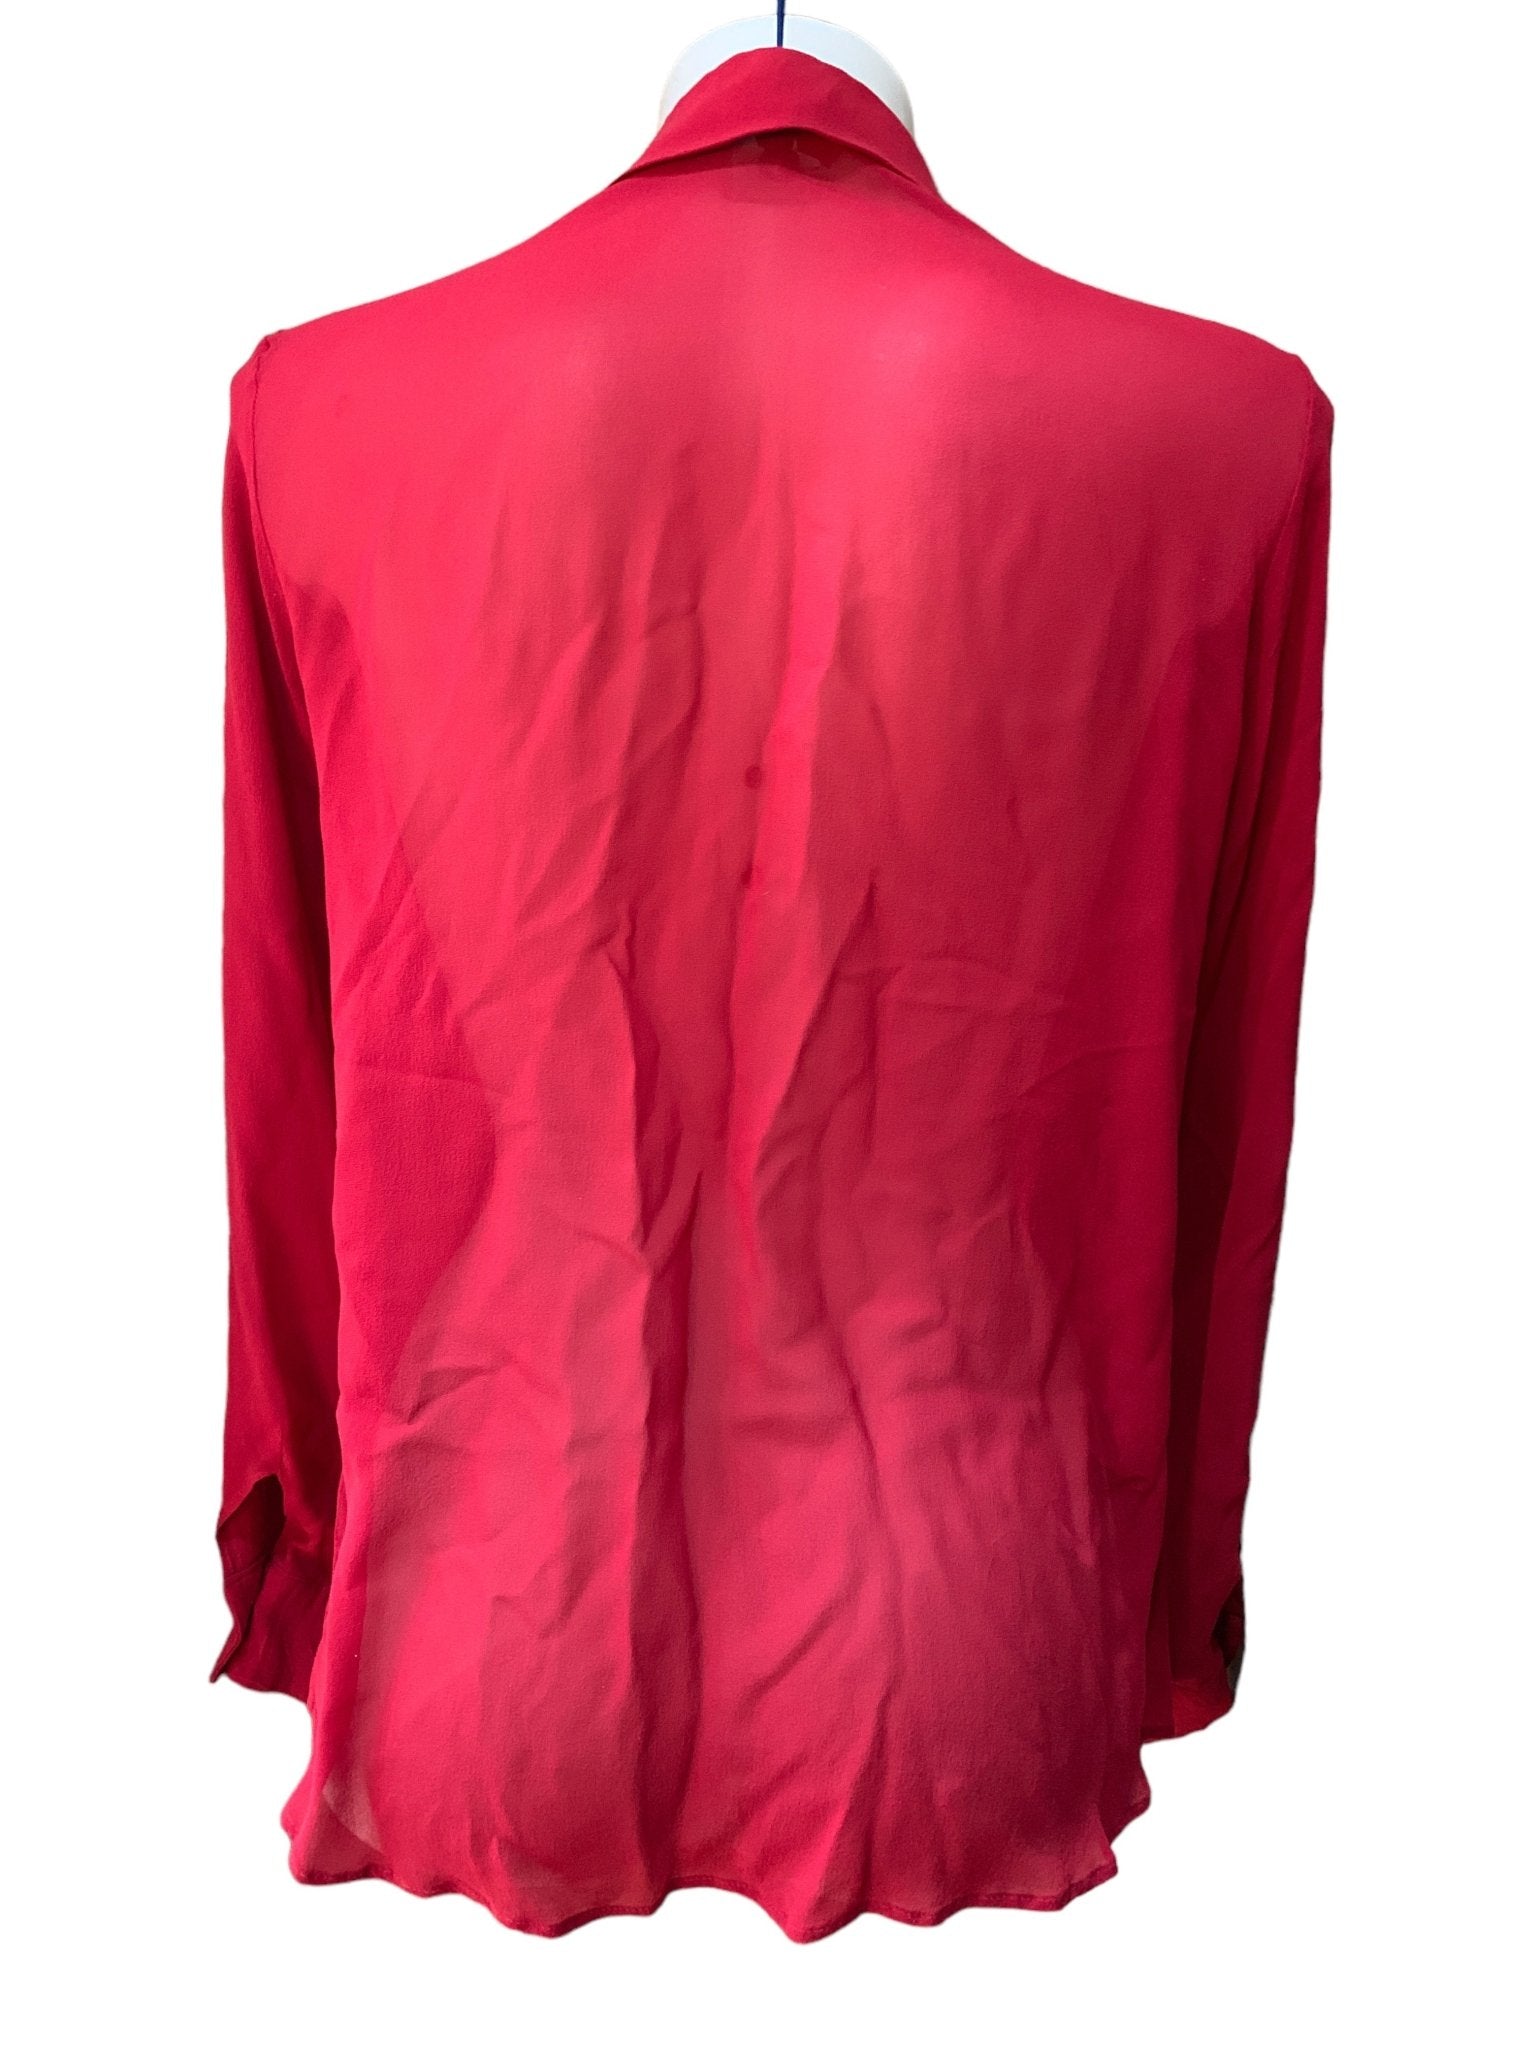 Max Mara camicia in seta rossa tg. 40 - AgeVintage